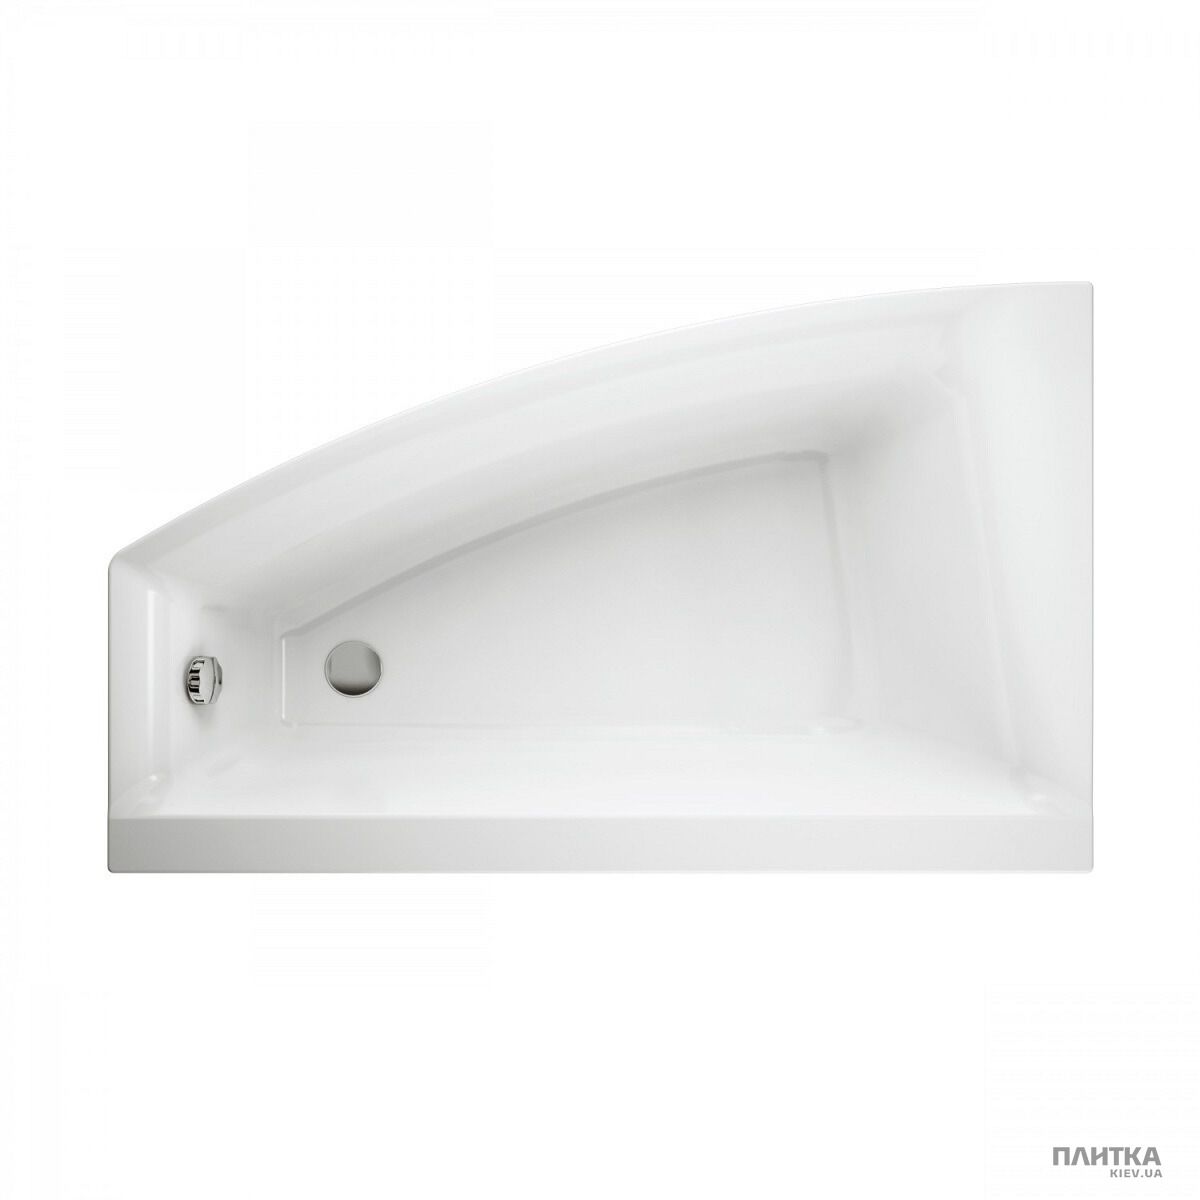 Акриловая ванна Cersanit Virgo max 150x90 см,асимметричная левая белый